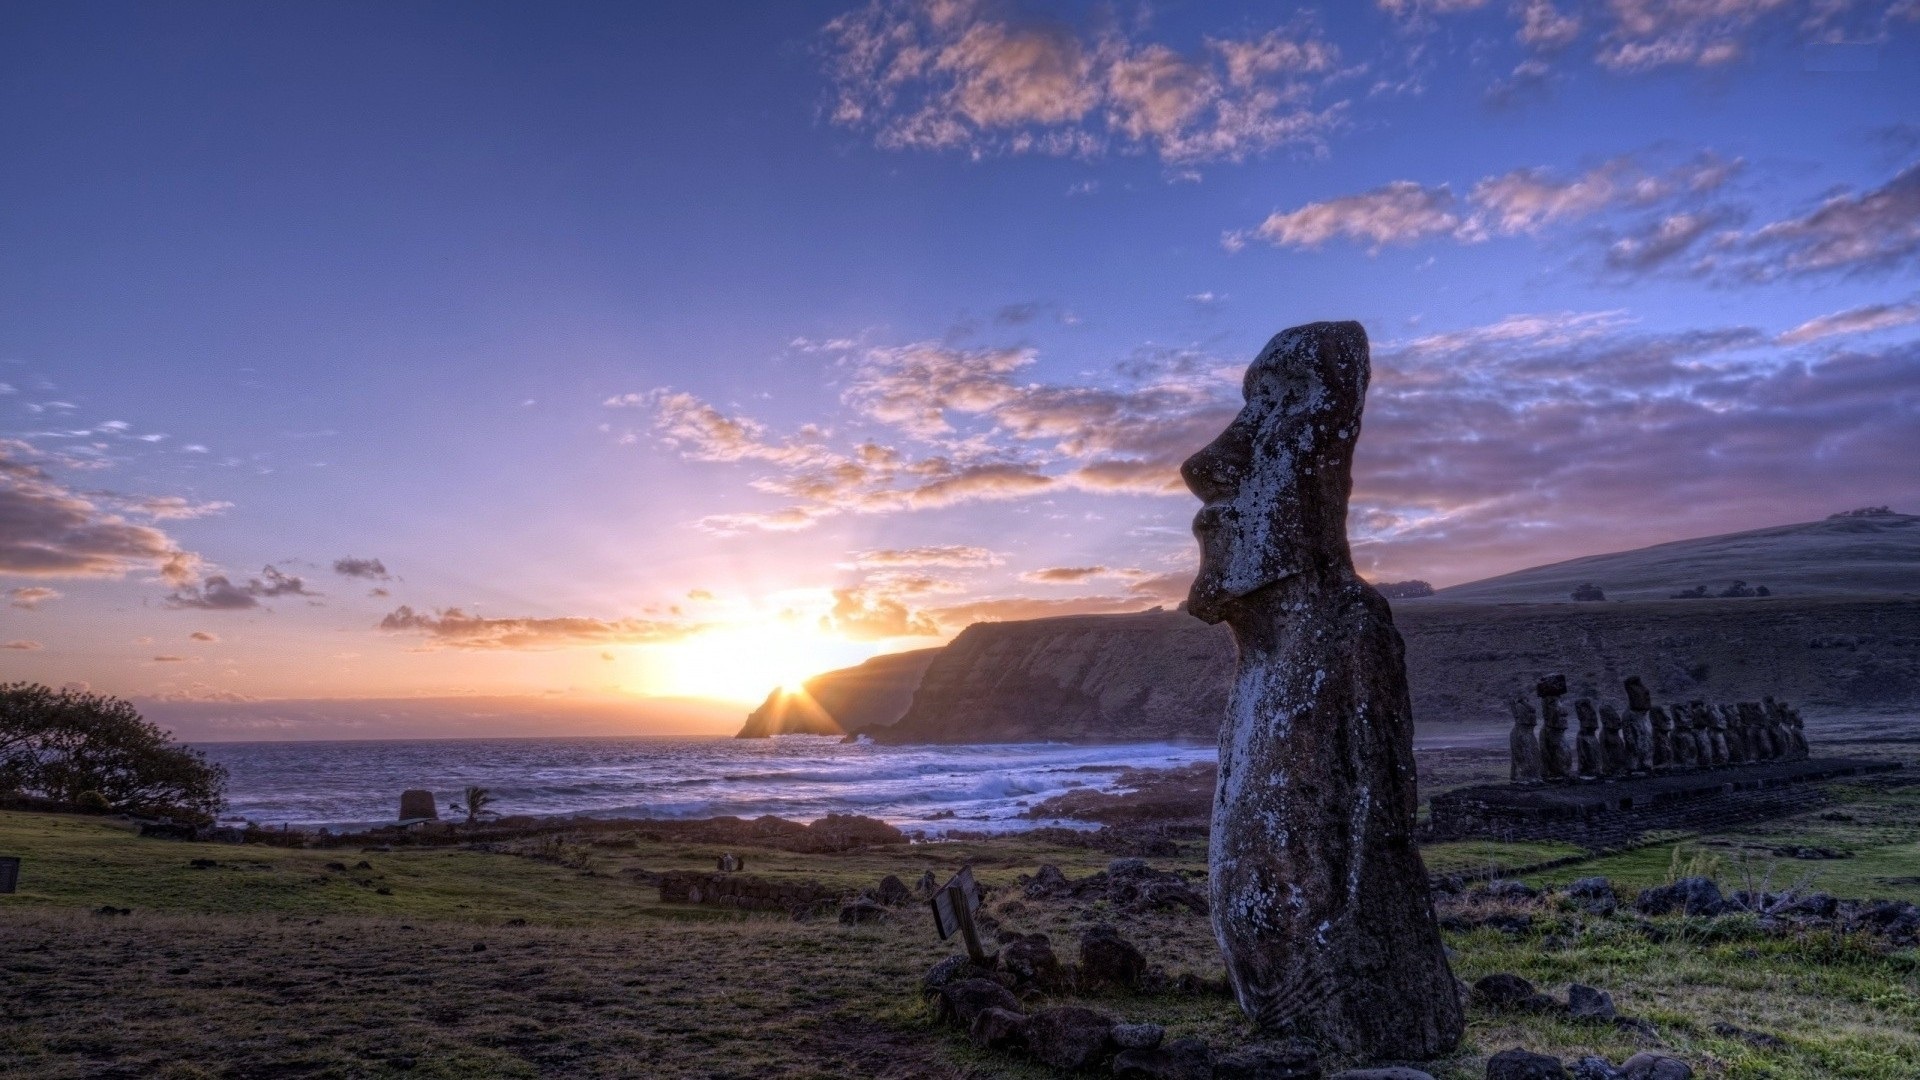 Easter Island wallpaper, Scenic beauty, Island charm, Breathtaking landscape, 1920x1080 Full HD Desktop